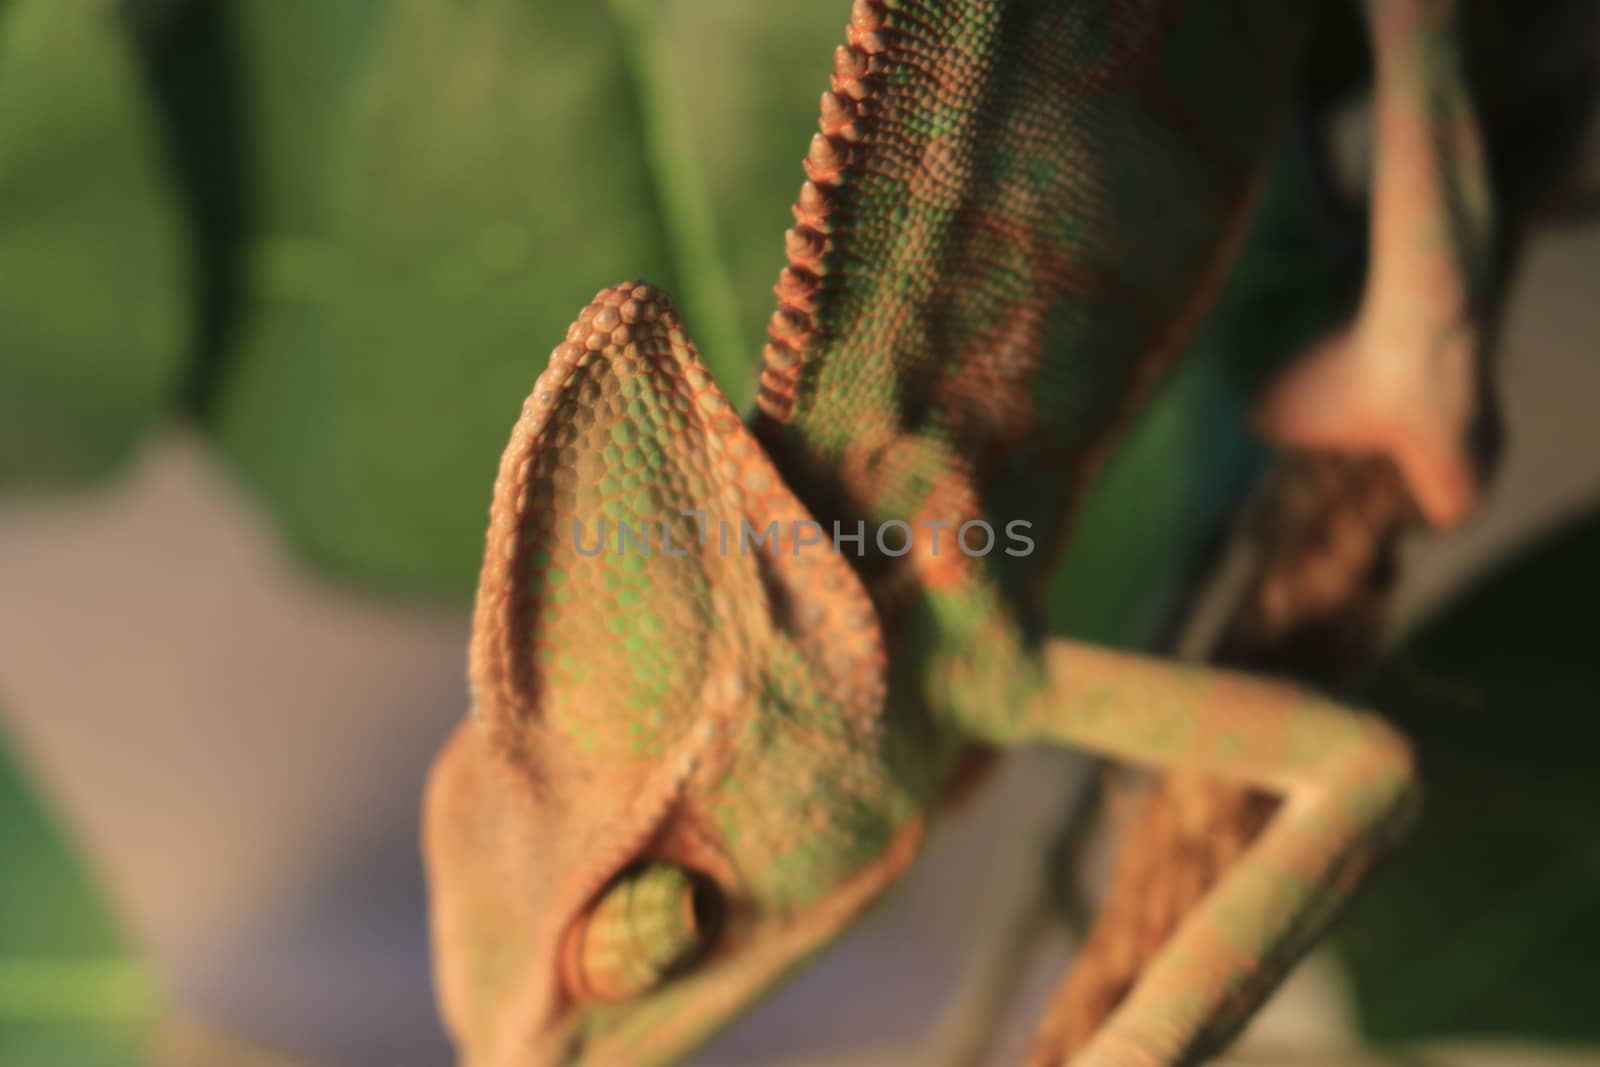 Veiled Chameleon on plant against green background/Yemen Chameleon/Veiled Chameleon (Chamaeleo Calyptratus) by mynewturtle1